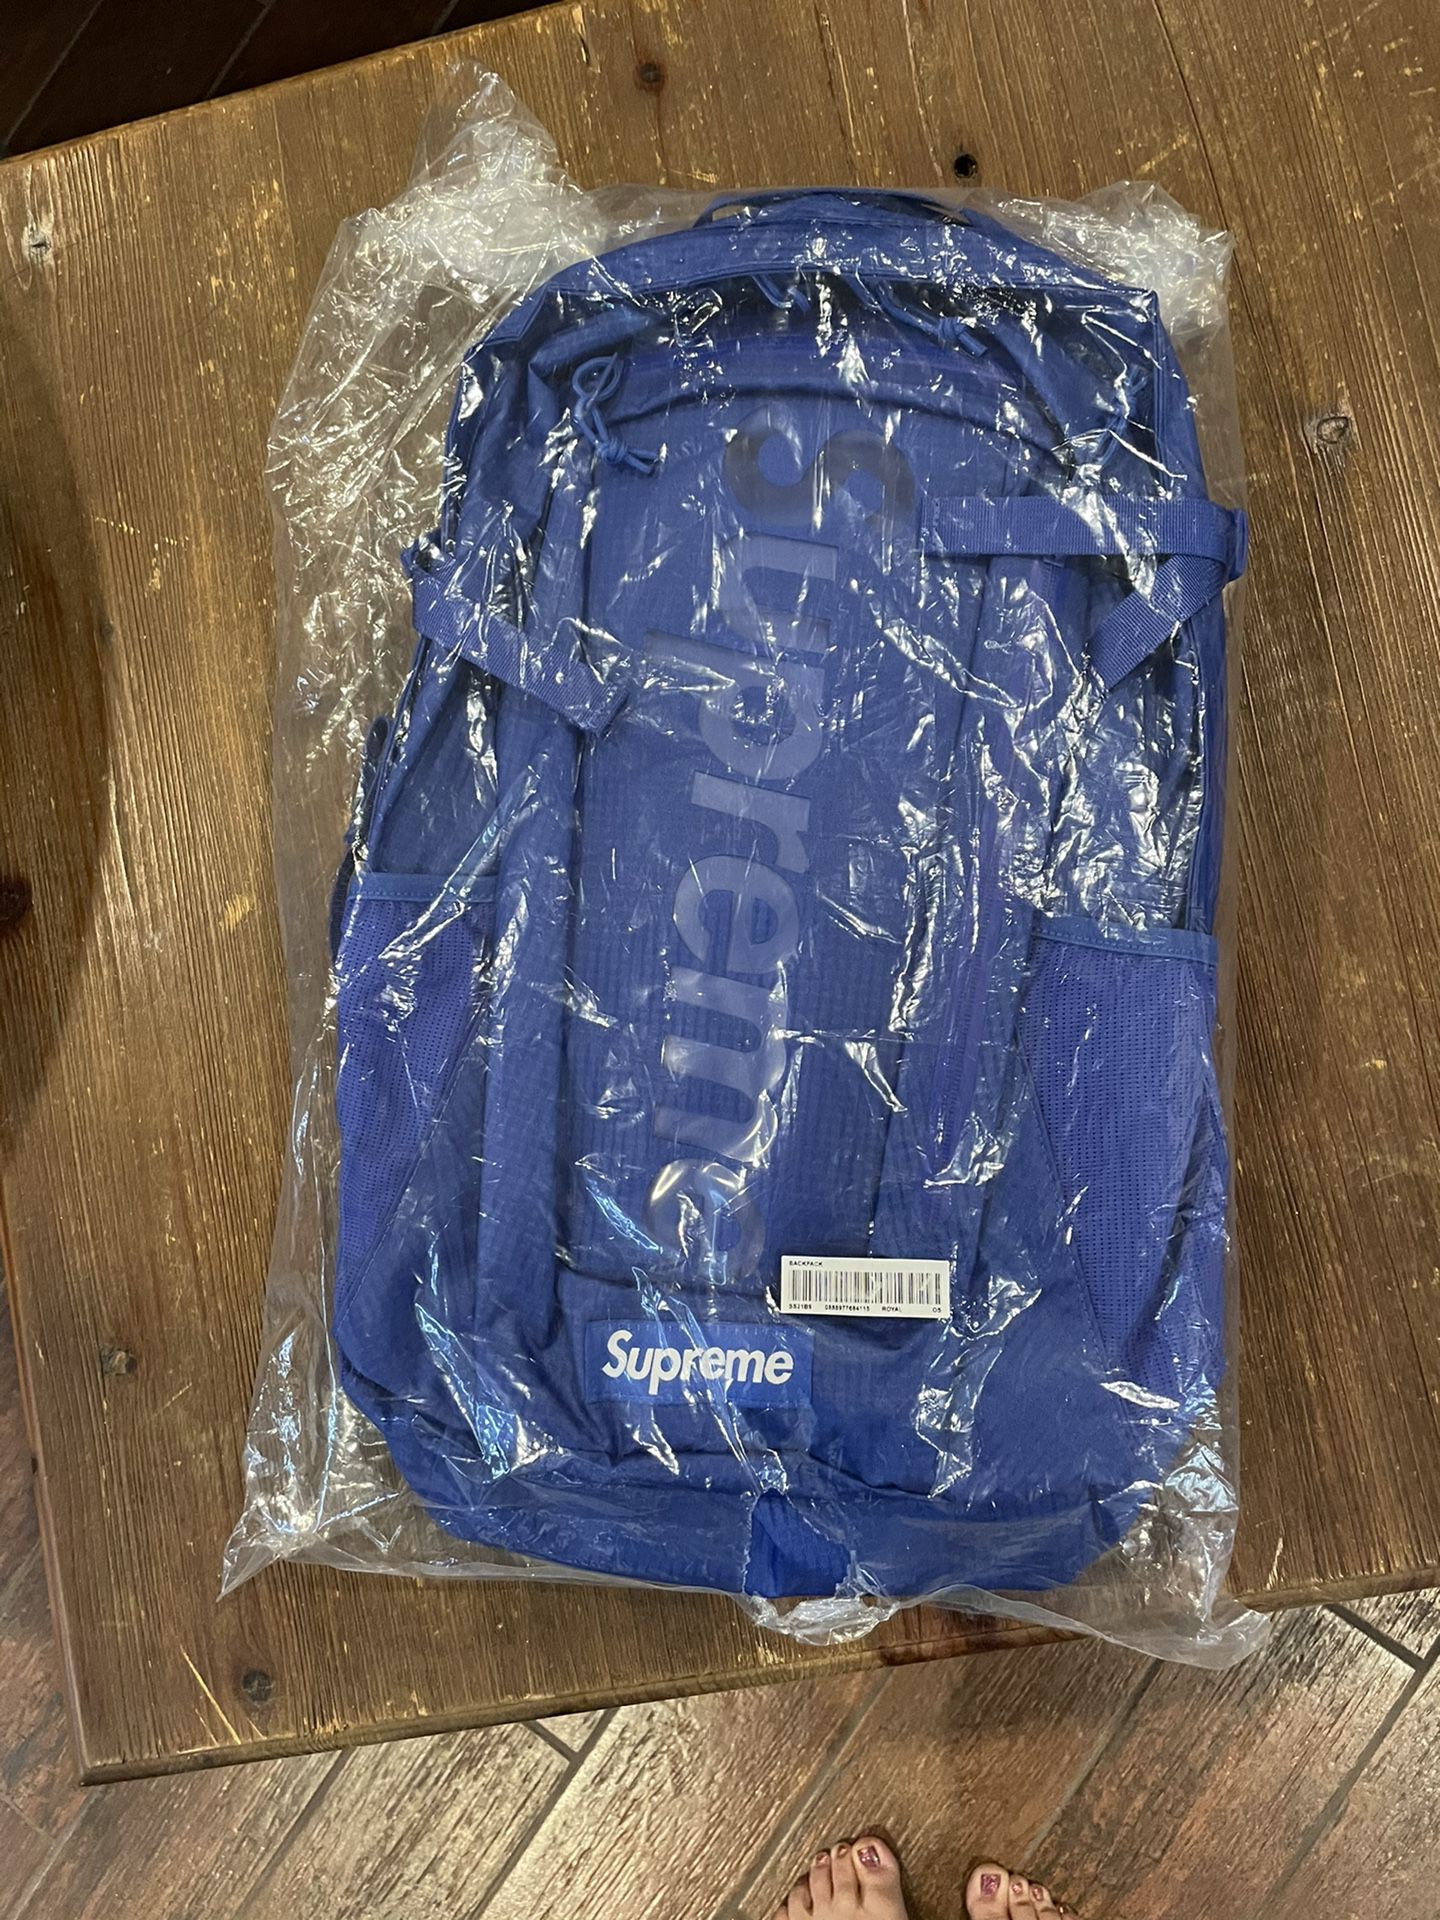 Supreme Blue backpack